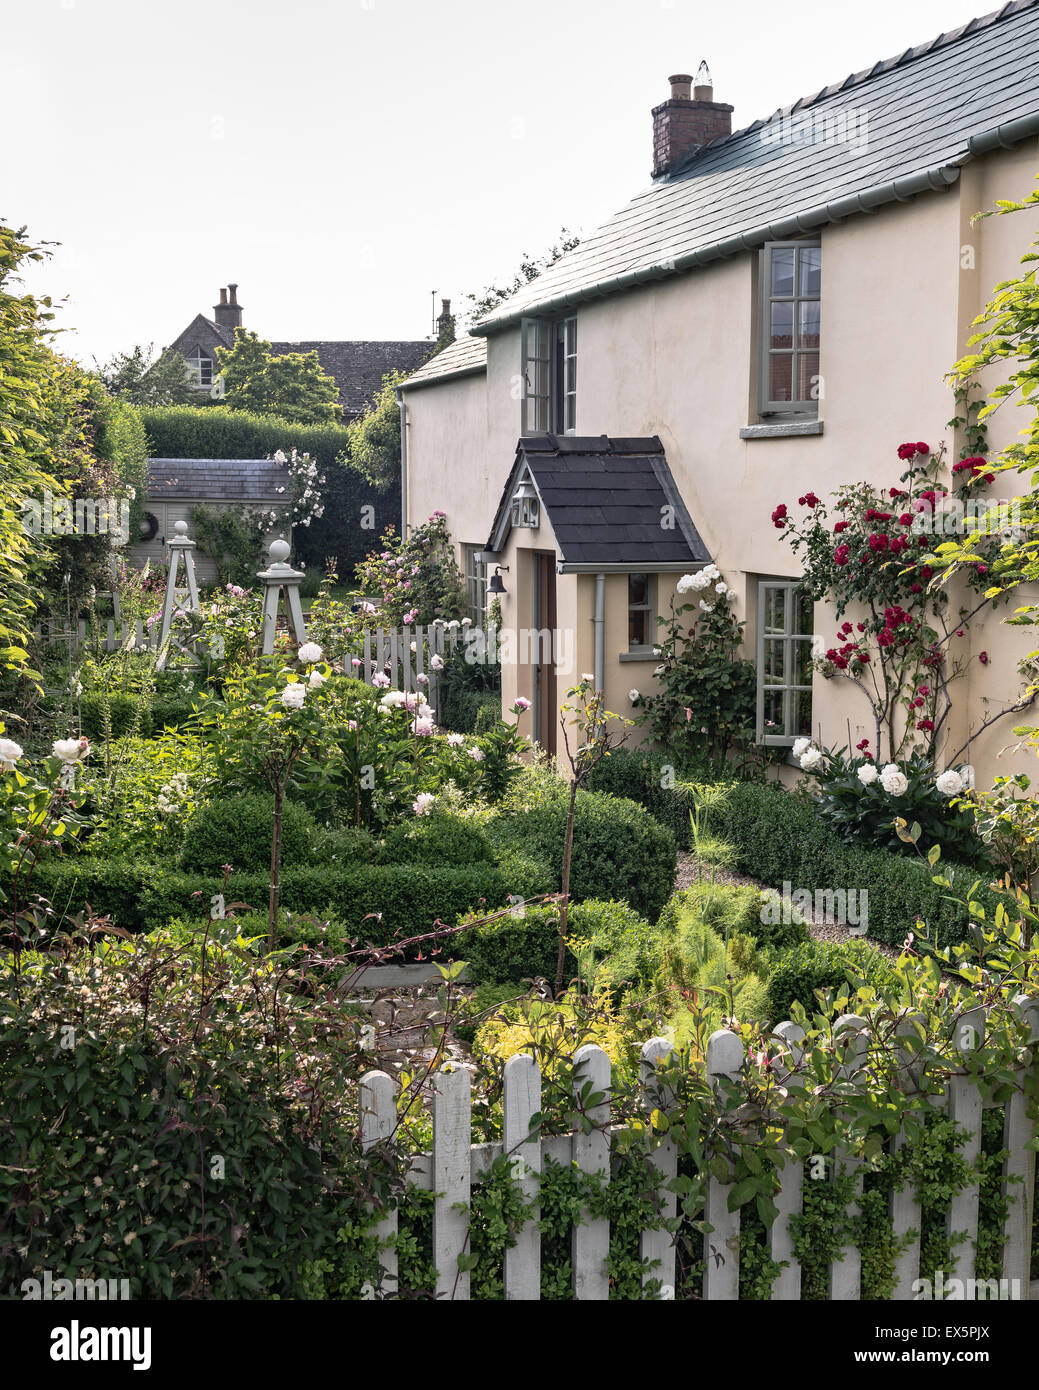 La façade extérieure d'une maison de campagne anglaise avec picket fence et Rose Garden Banque D'Images